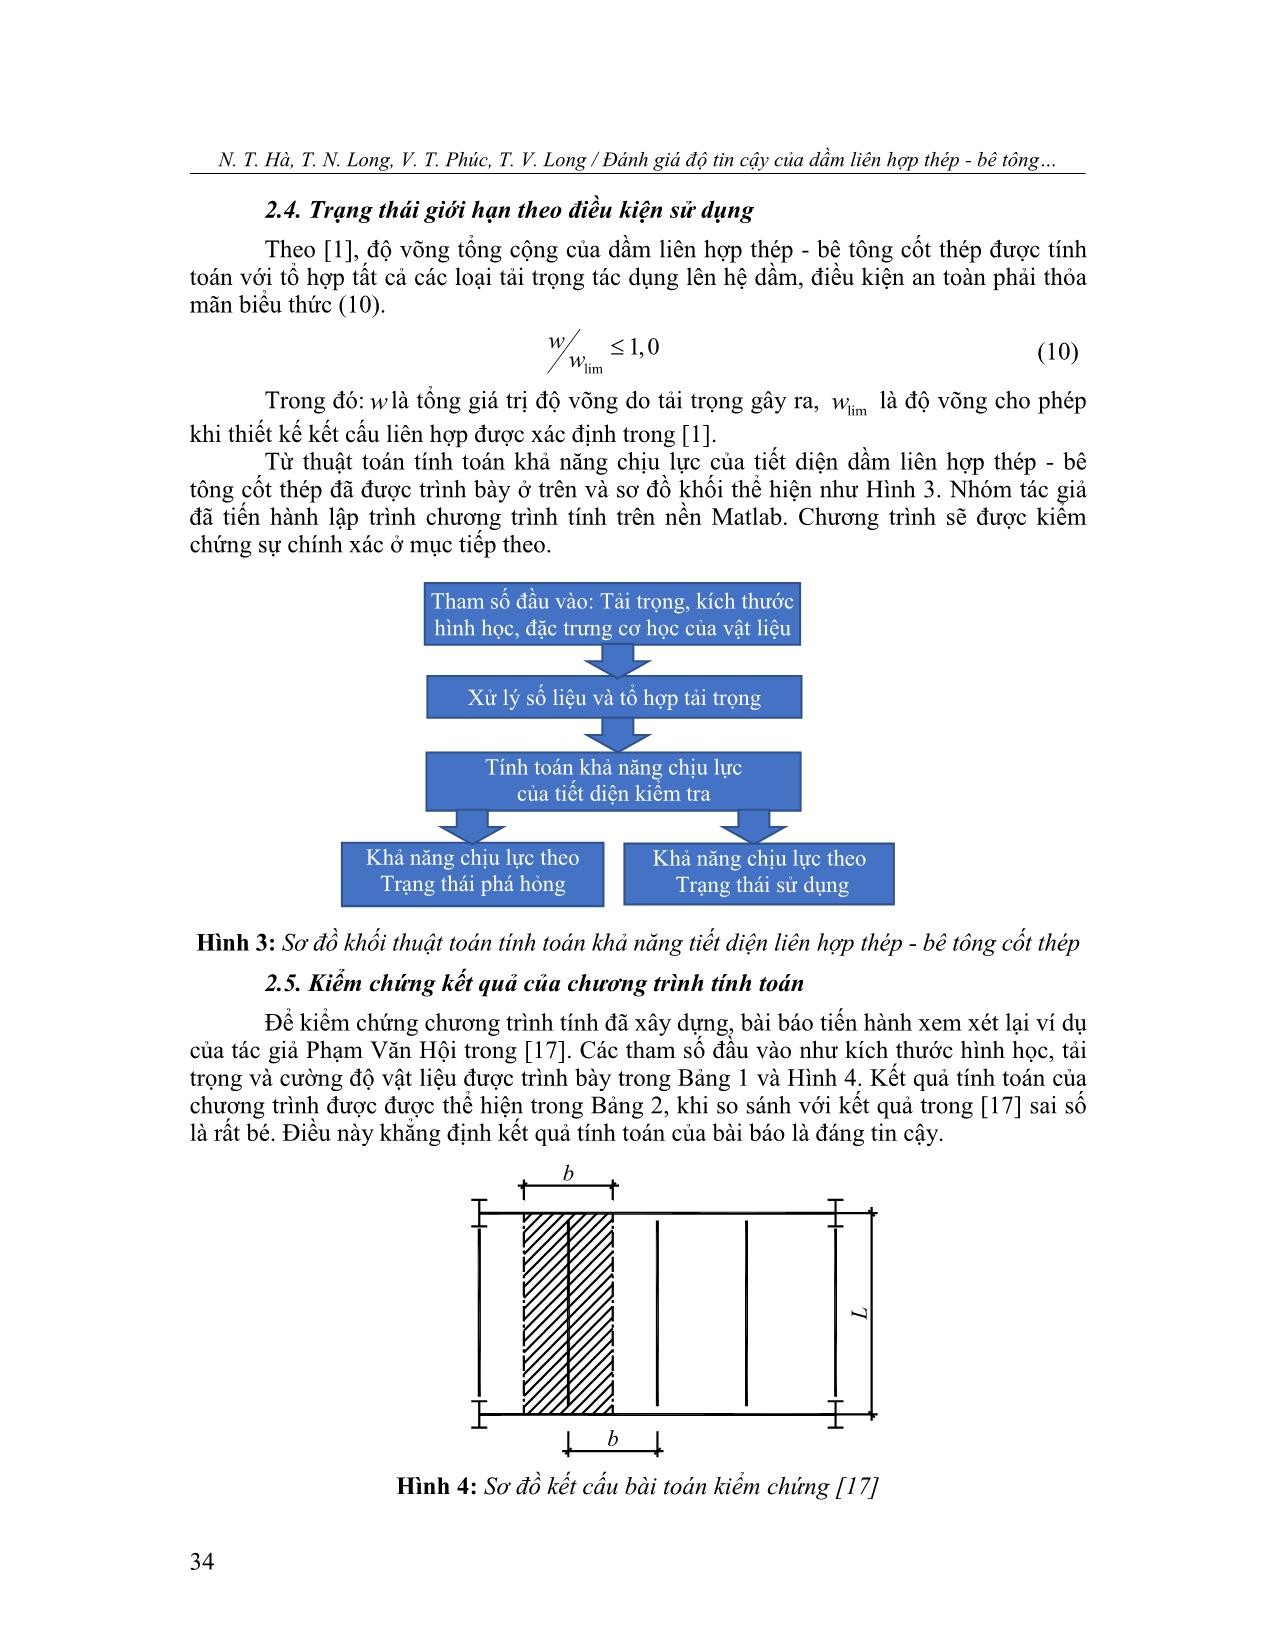 Đánh giá độ tin cậy của dầm liên hợp thép - bê tông cốt thép sử dụng phương pháp mô phỏng monte carlo trang 5